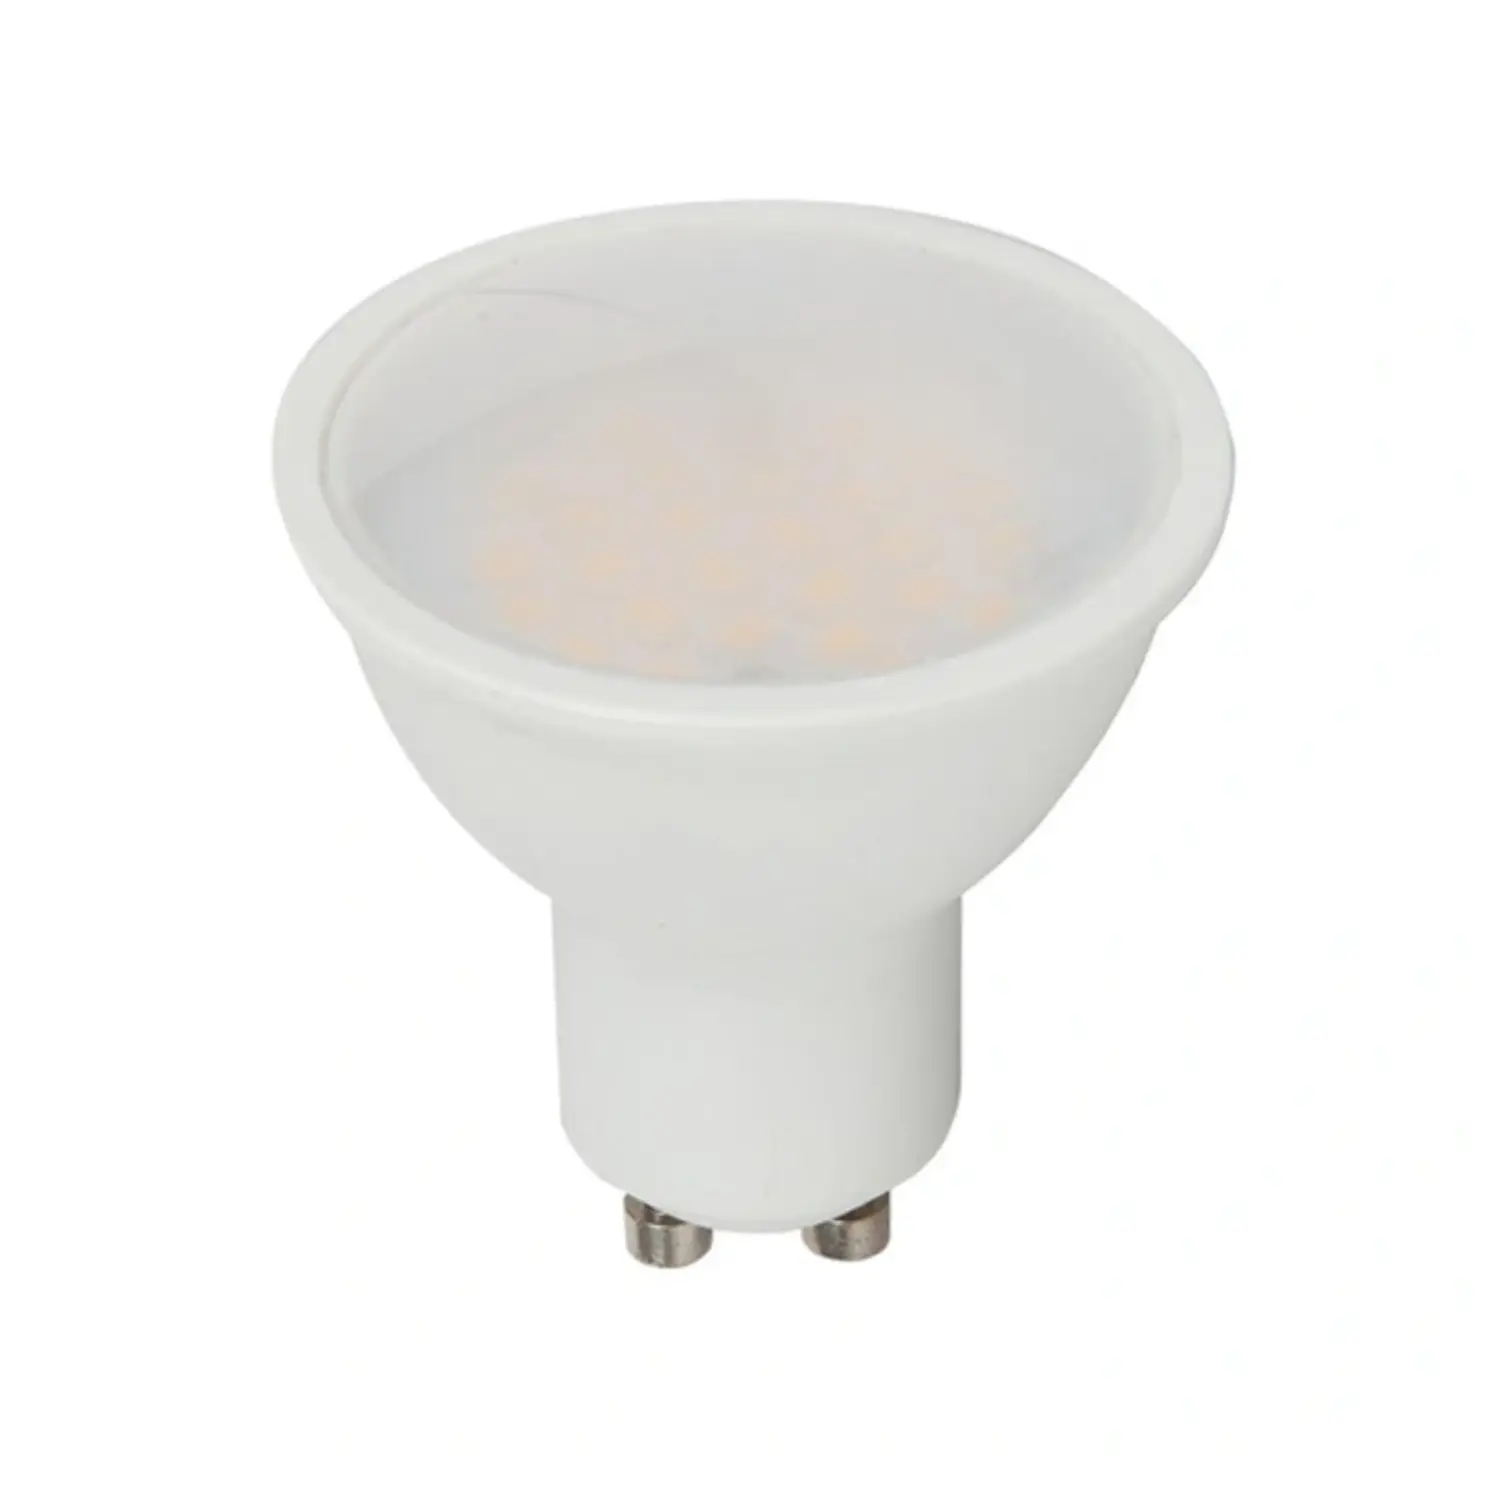 immagine del prodotto lampadina led chip samsung lampada faretto 5 watt bianco freddo